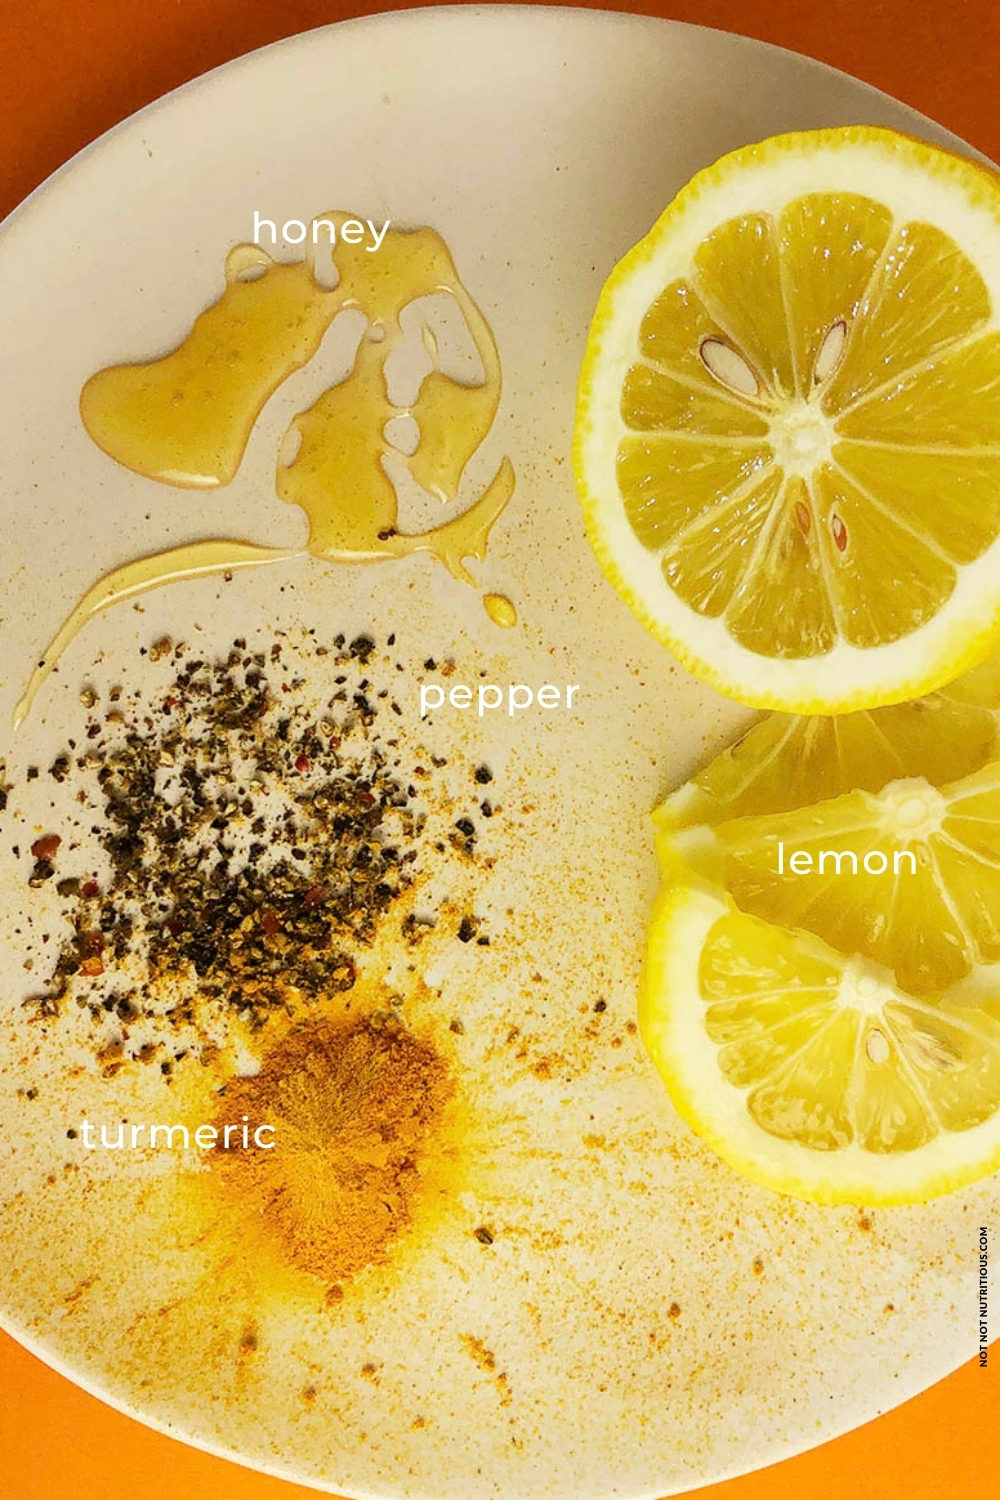 Ingredients for Hot Lemonade - honey, lemons, turmeric, and black pepper